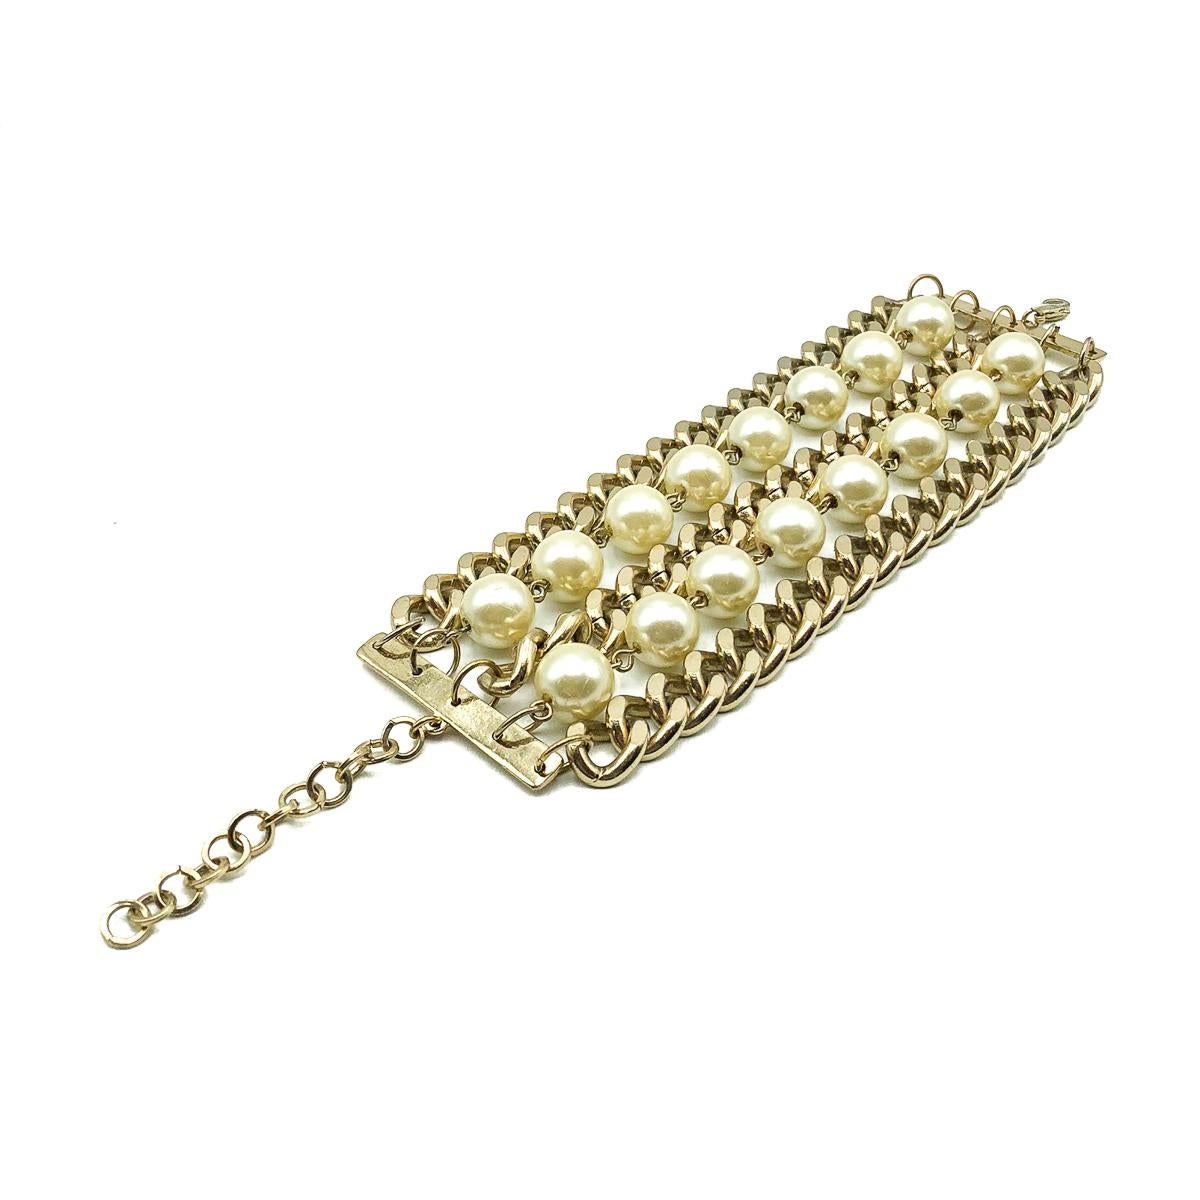 Une manchette vintage en cotte de mailles avec des perles. Réalisé en métal doré de couleur claire avec de magnifiques perles de verre en forme de fausses perles. Très bon état vintage, réglable 18-22cms. La combinaison frappante des chaînes plates